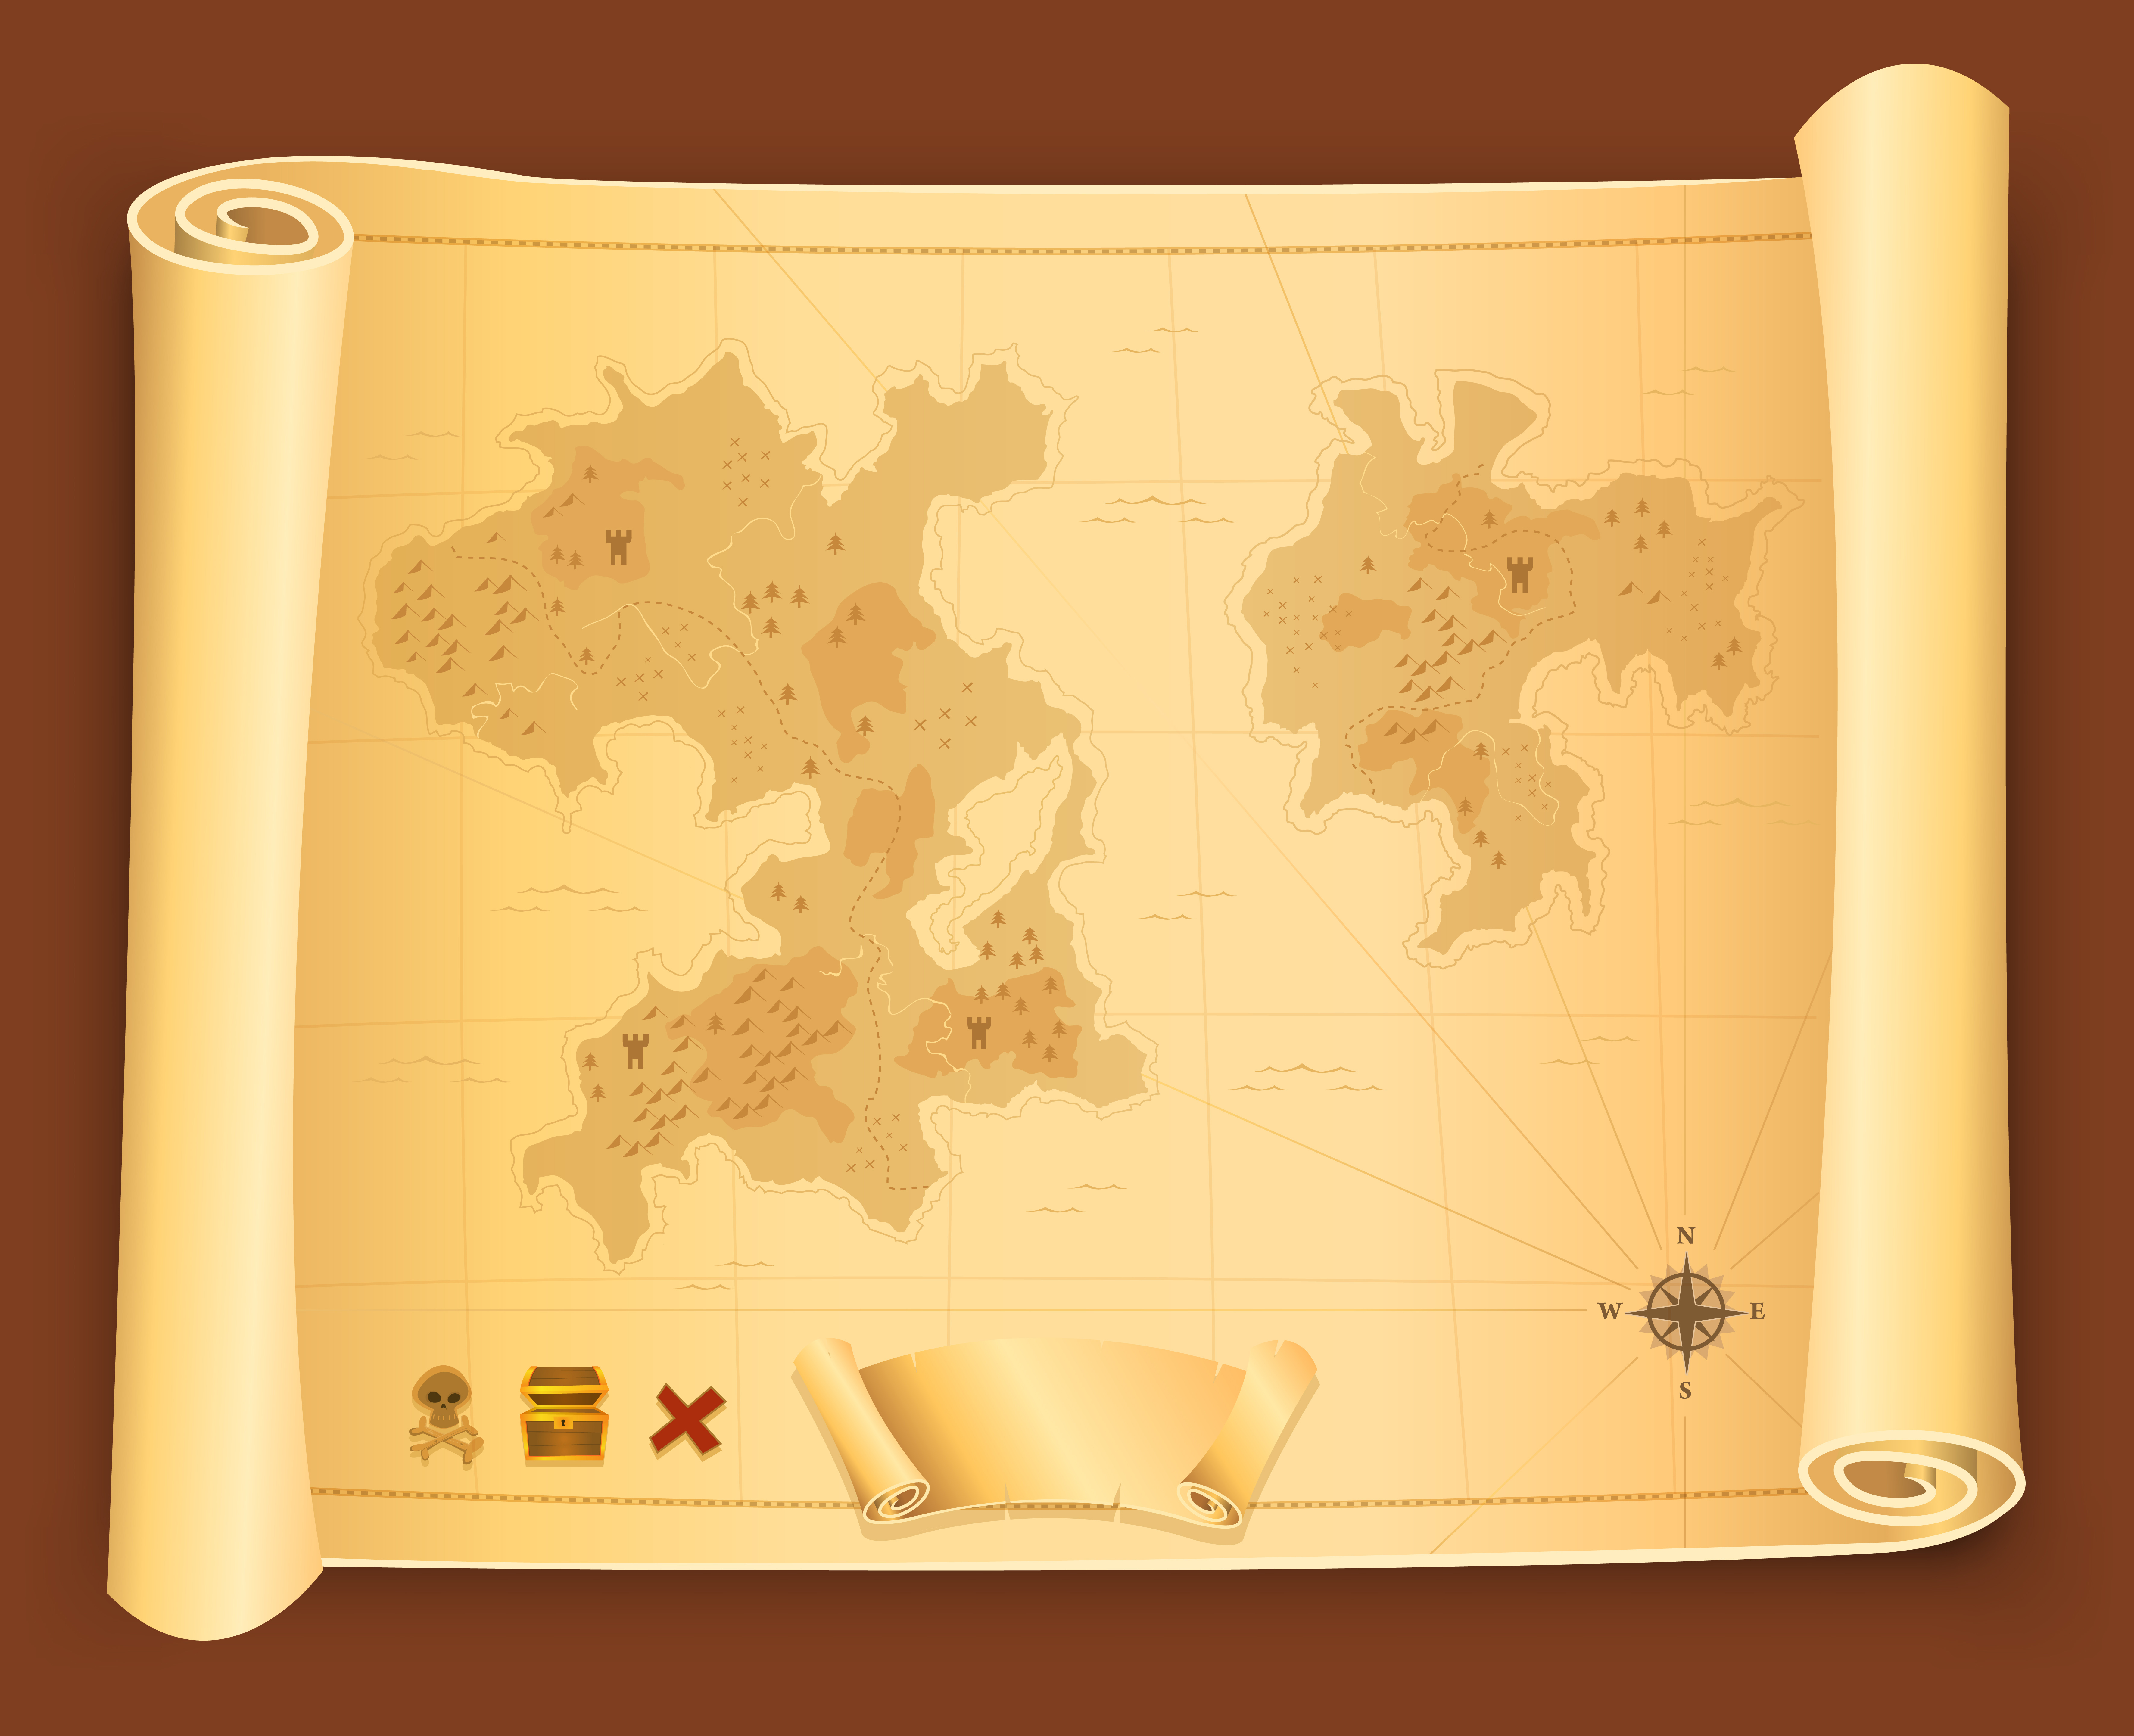 Mapa do Tesouro e Pergaminho by interprete-me on DeviantArt